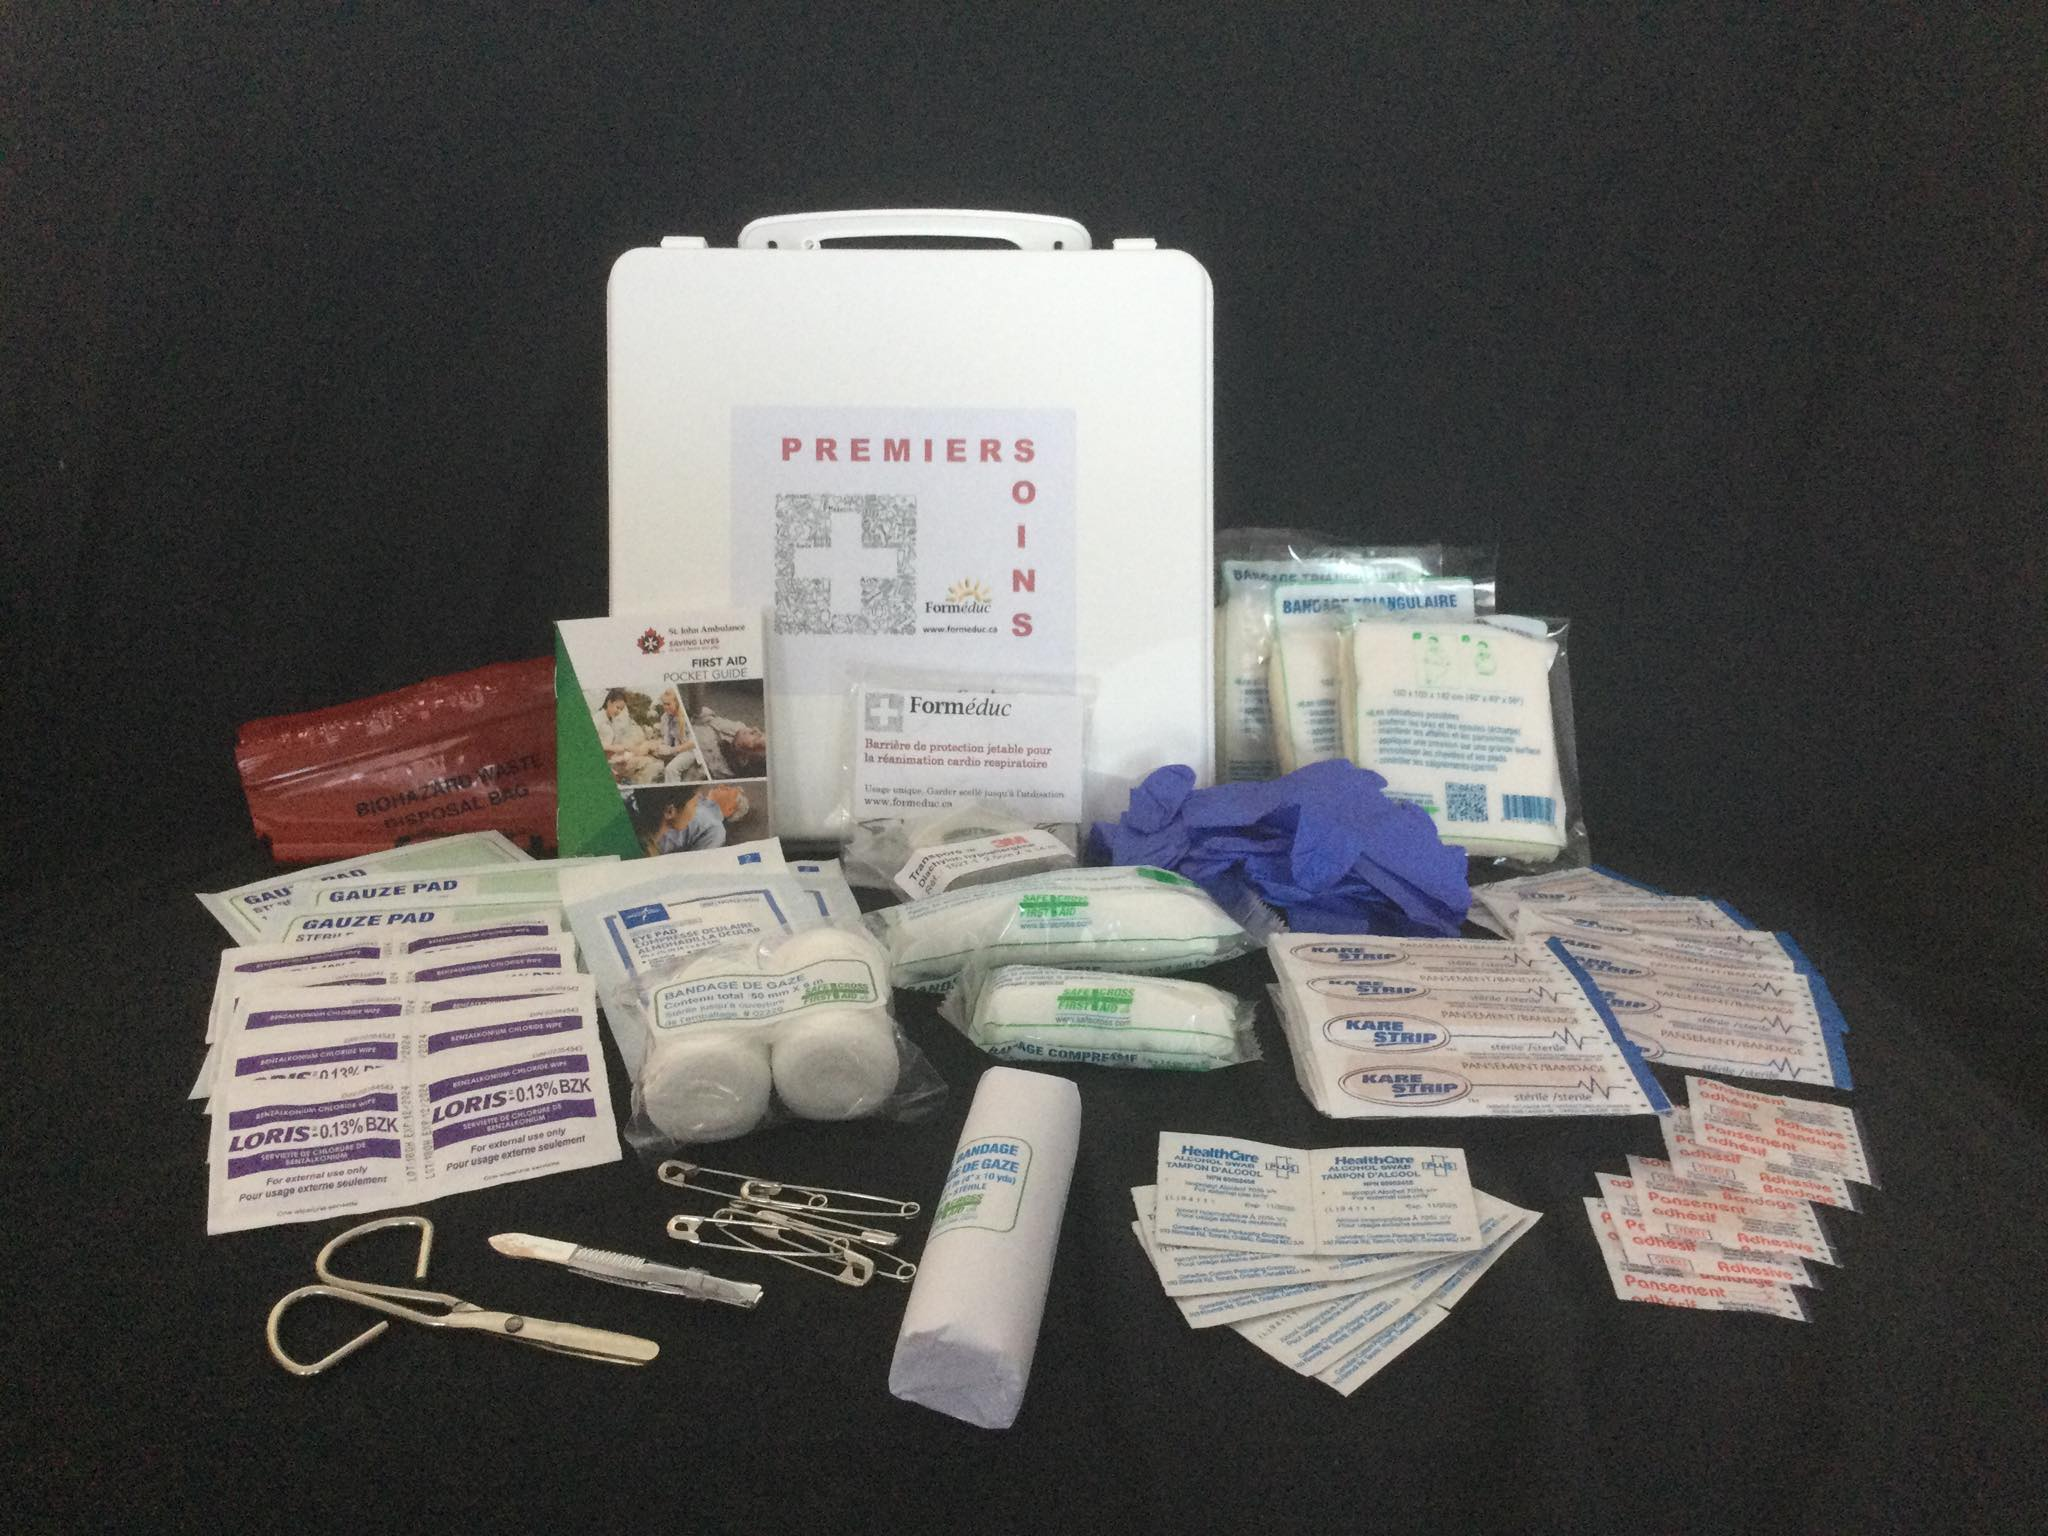 Trousse de secours Family Care Plus - Kit de premiers soins - Inuka